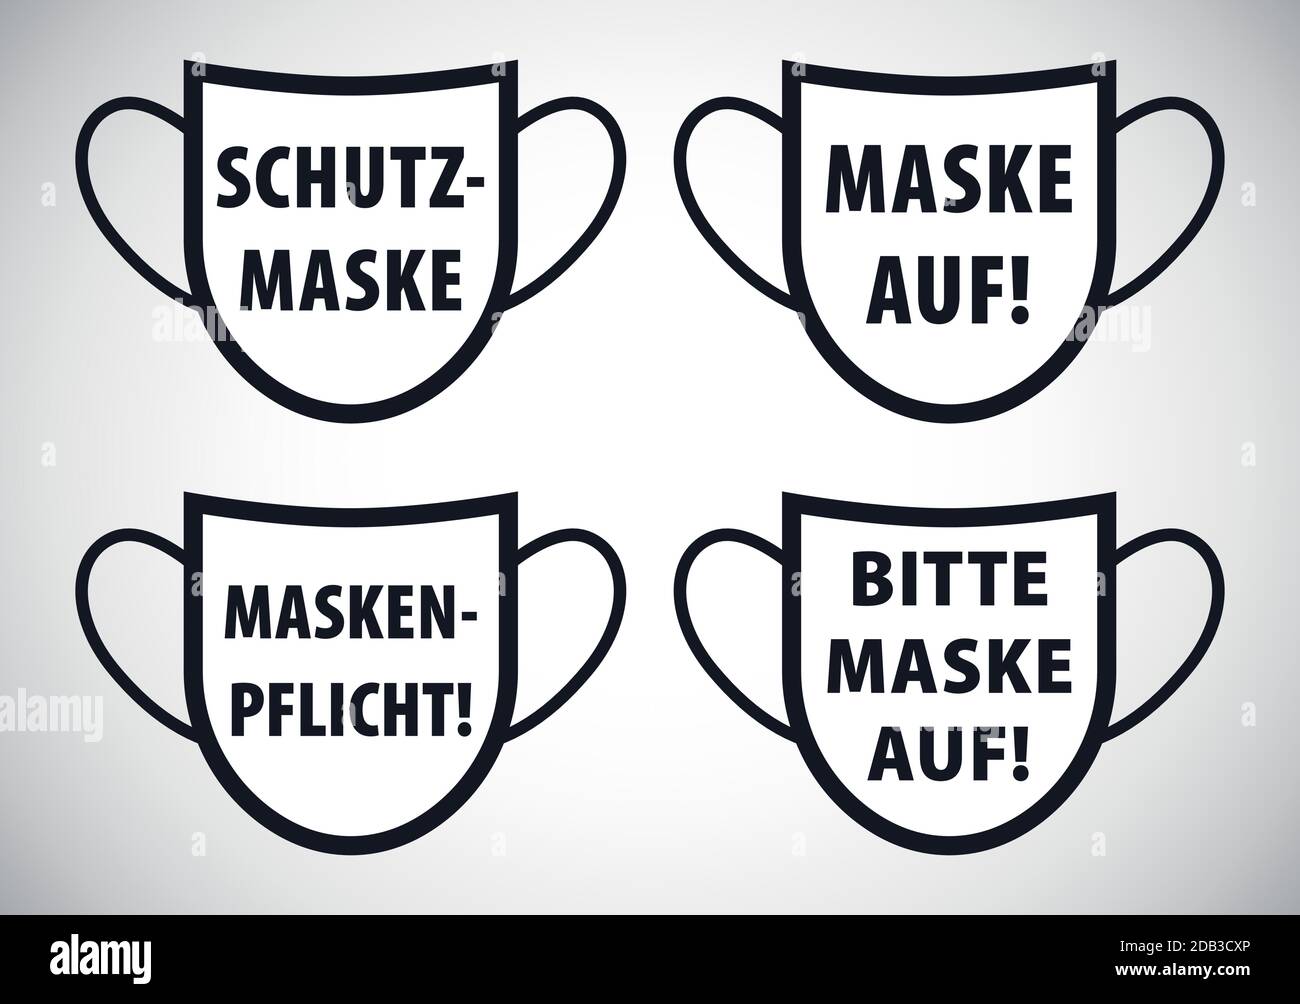 Deutsche Gesichtsmaske Anfrage oder Anforderung Zeichen Vektor Illustration Stock Vektor